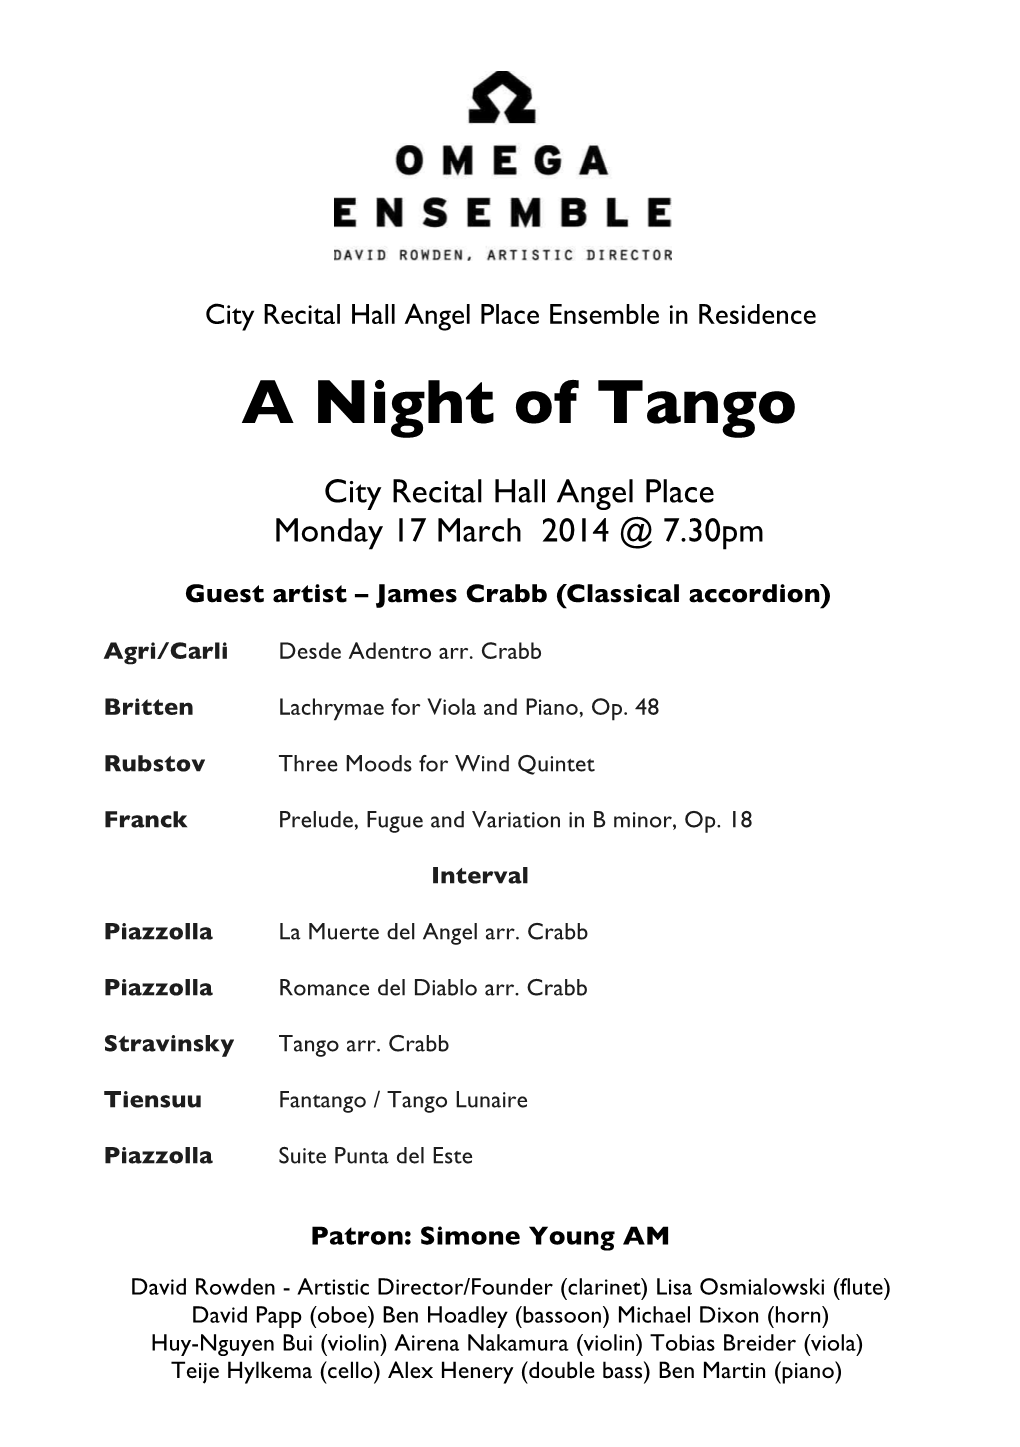 A Night of Tango